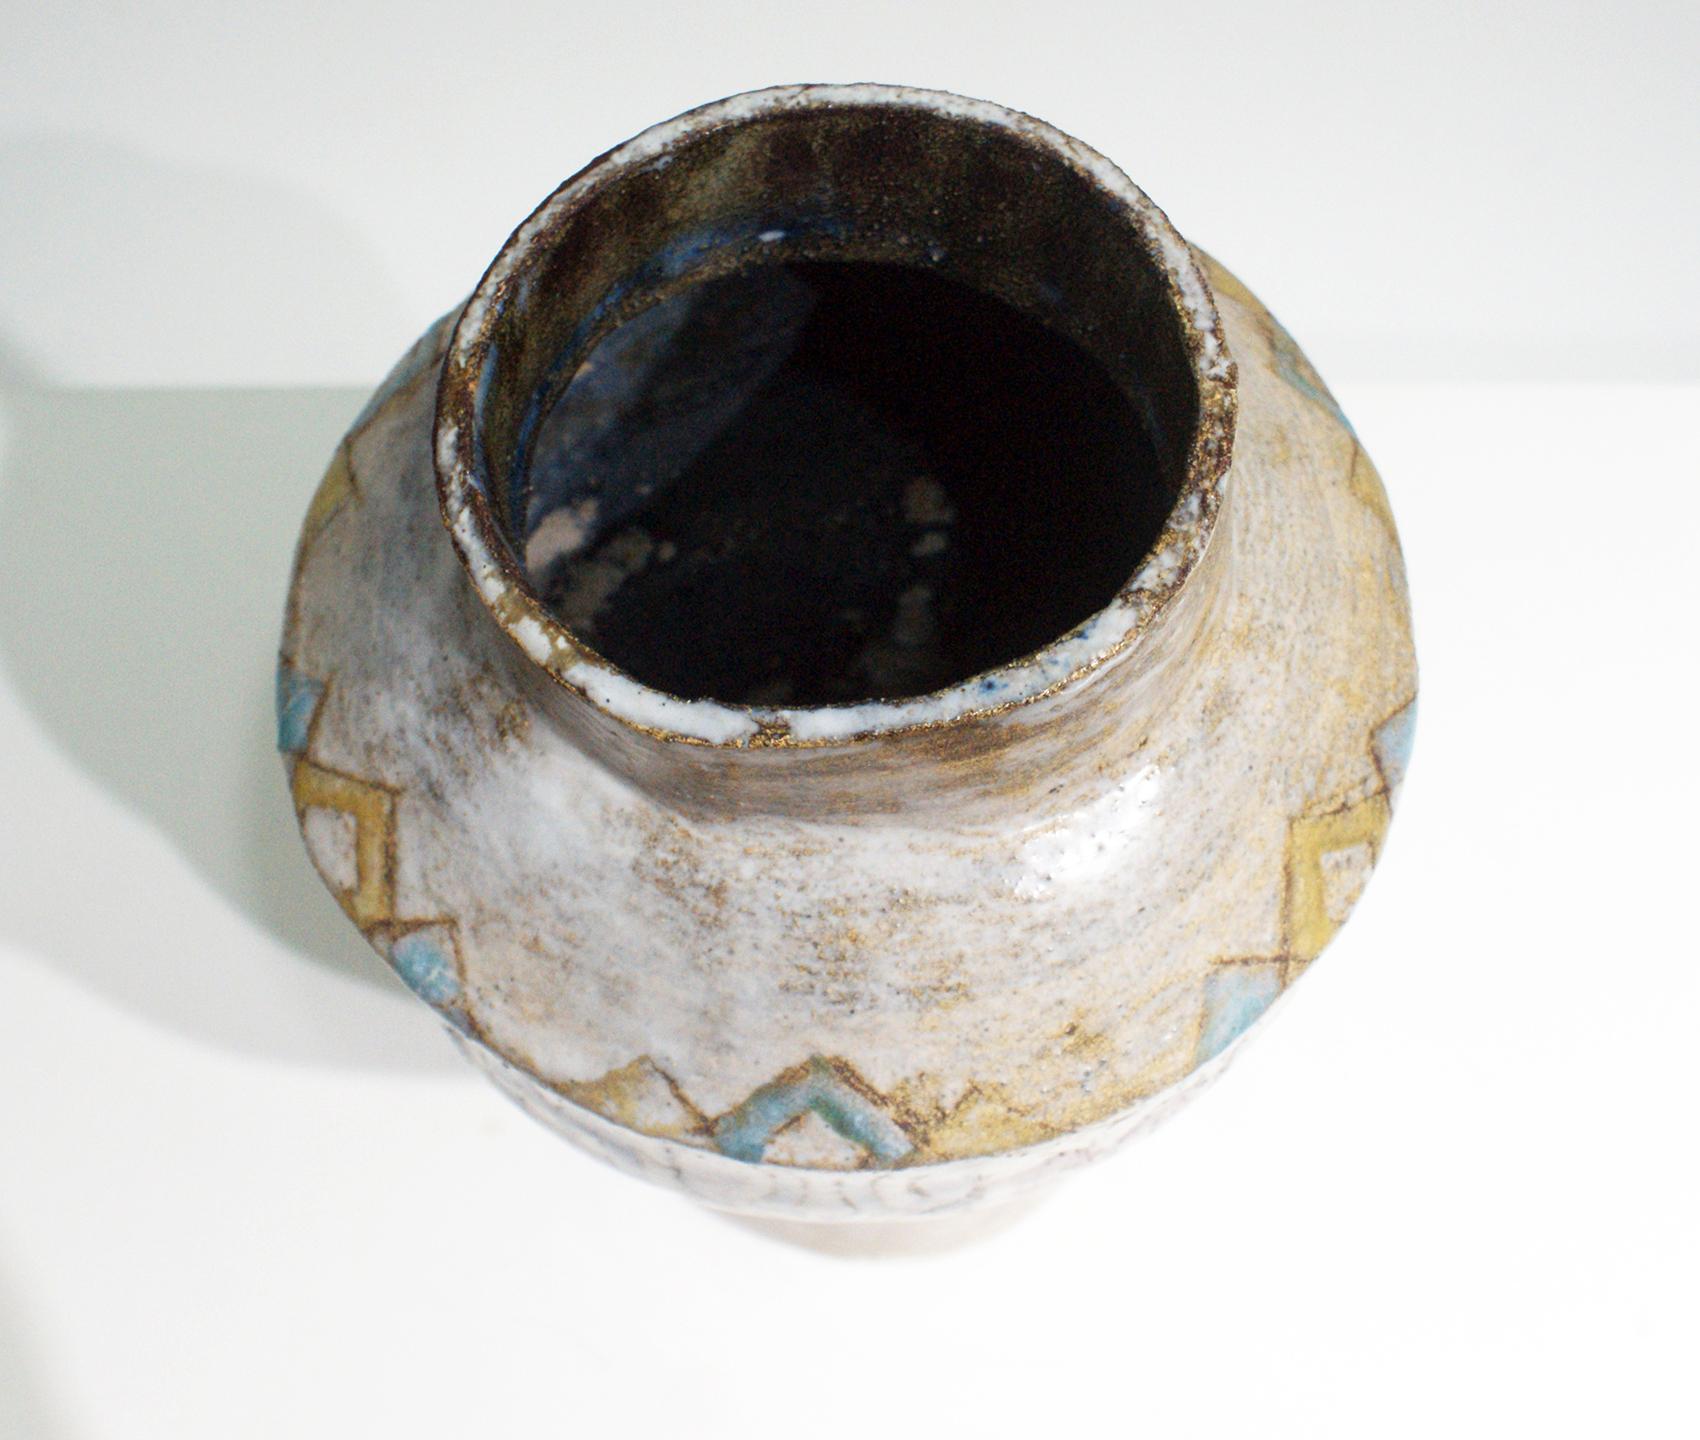 Enamel Beautiful Colored Ceramic Vase Signed “Vallauris”, circa 1950s